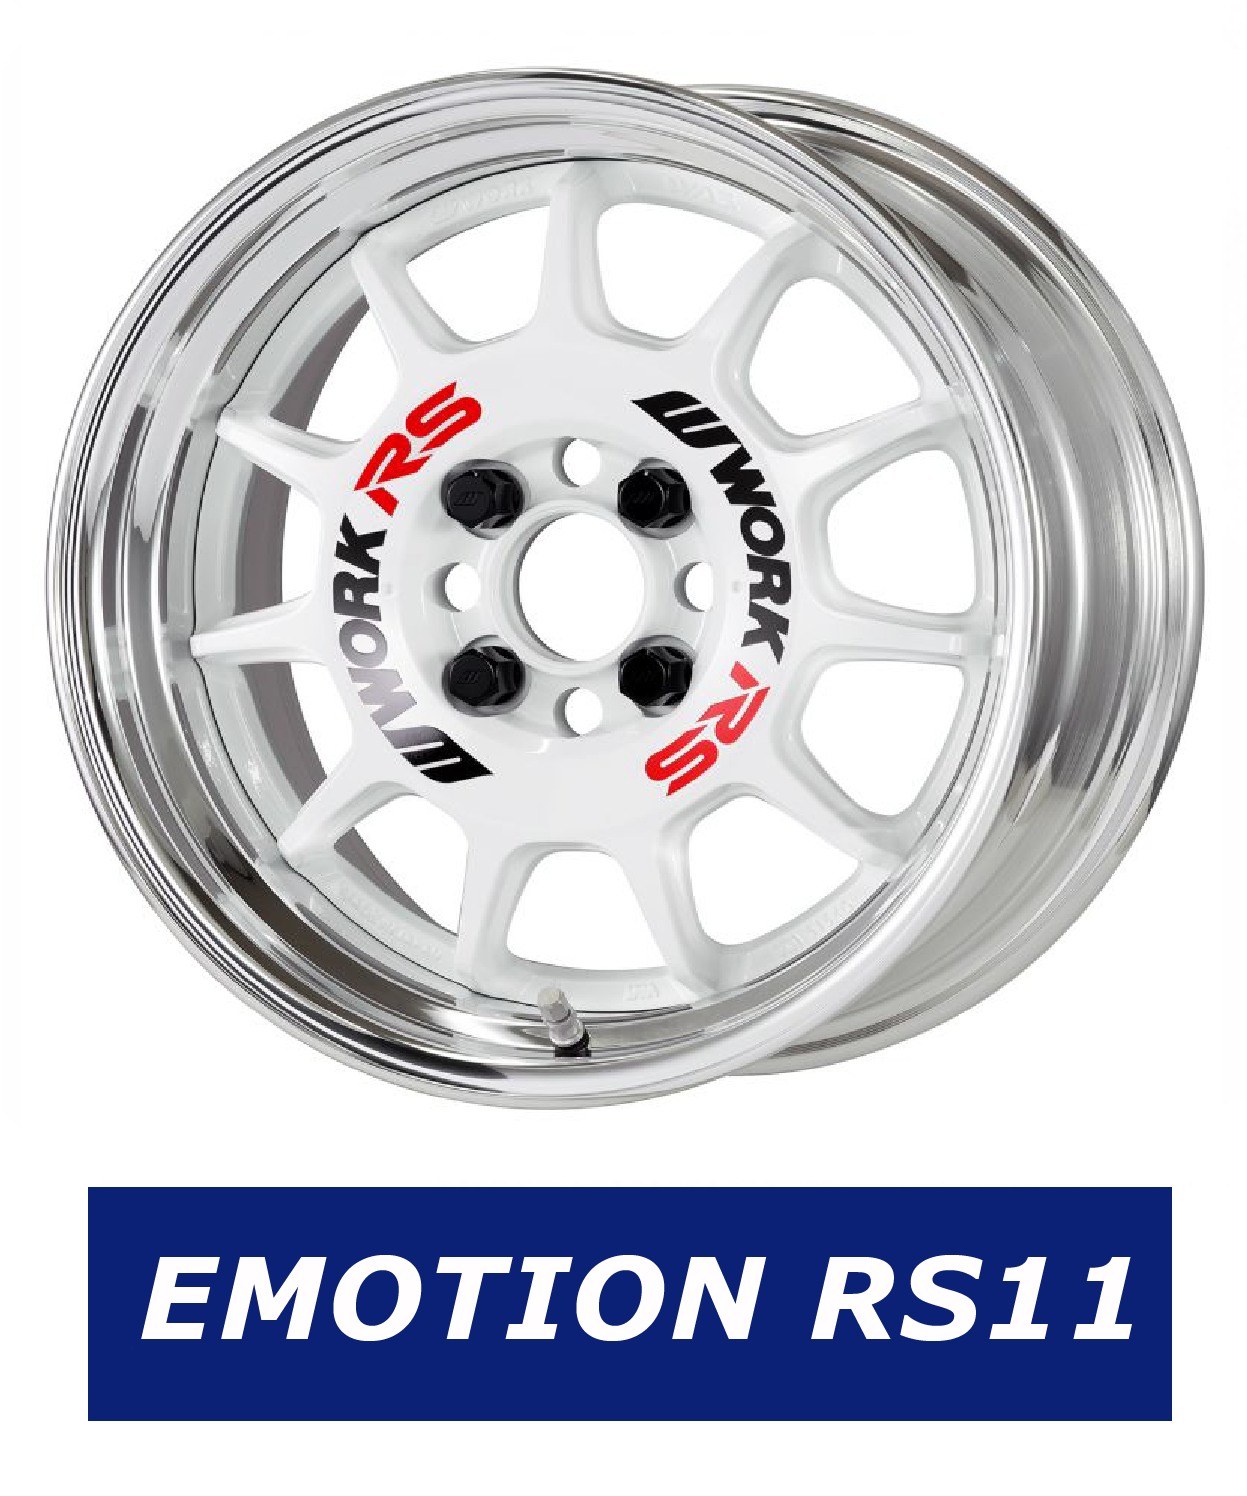 Work wheel france emotion rs11 1